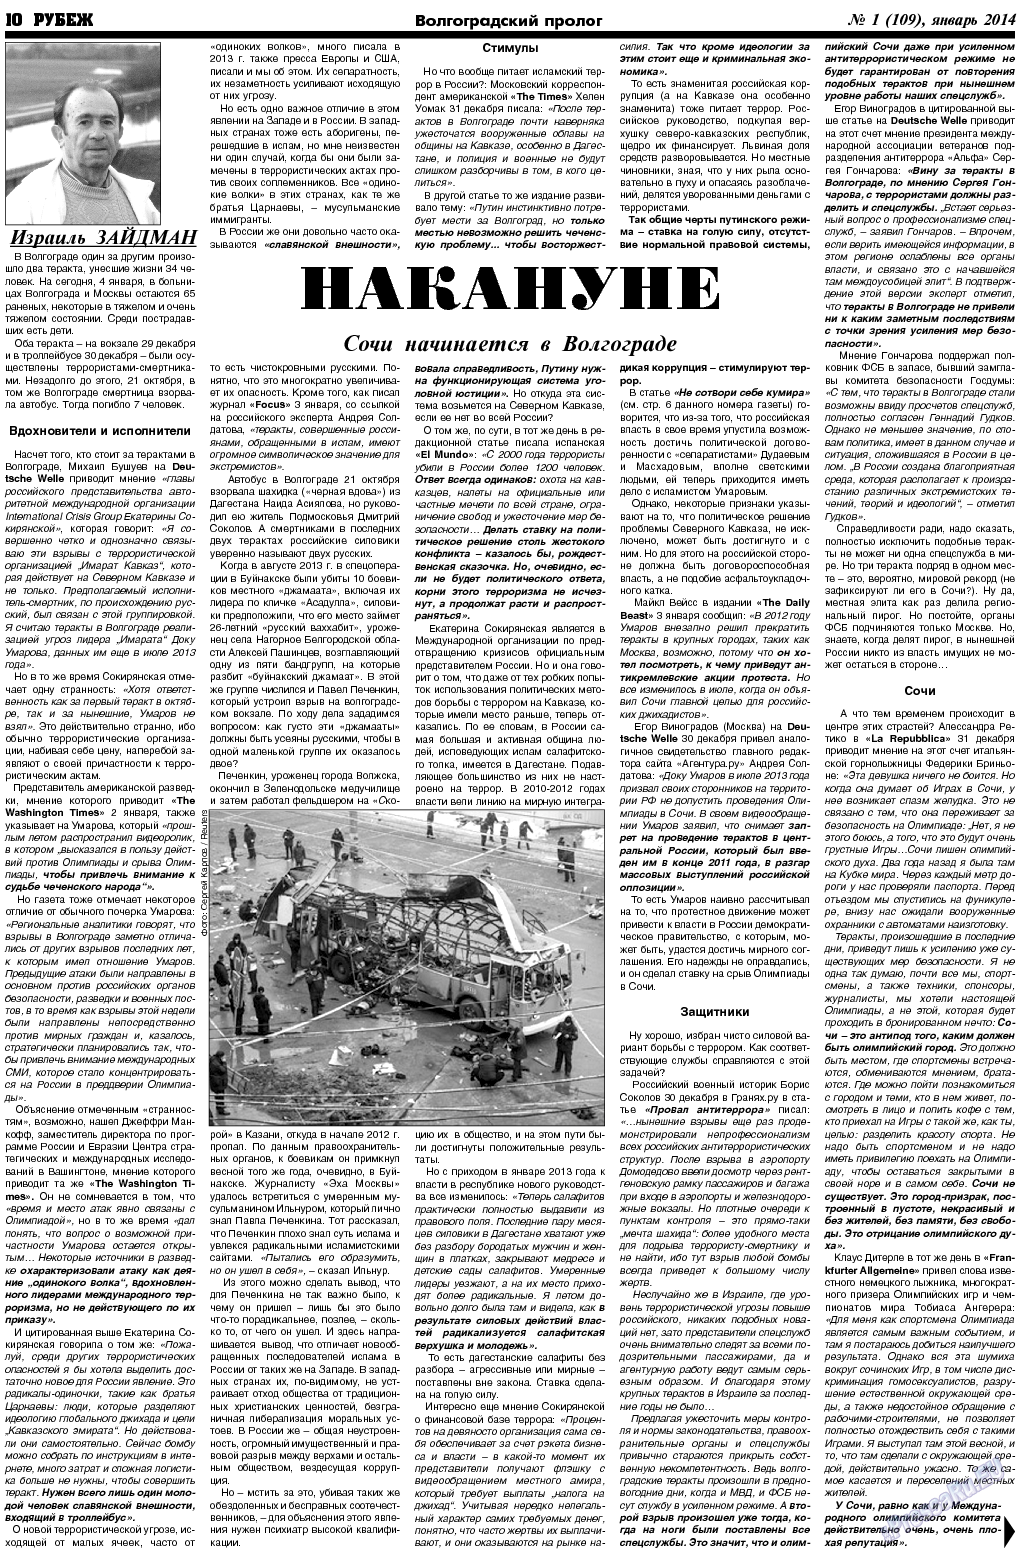 Рубеж (газета). 2014 год, номер 1, стр. 10